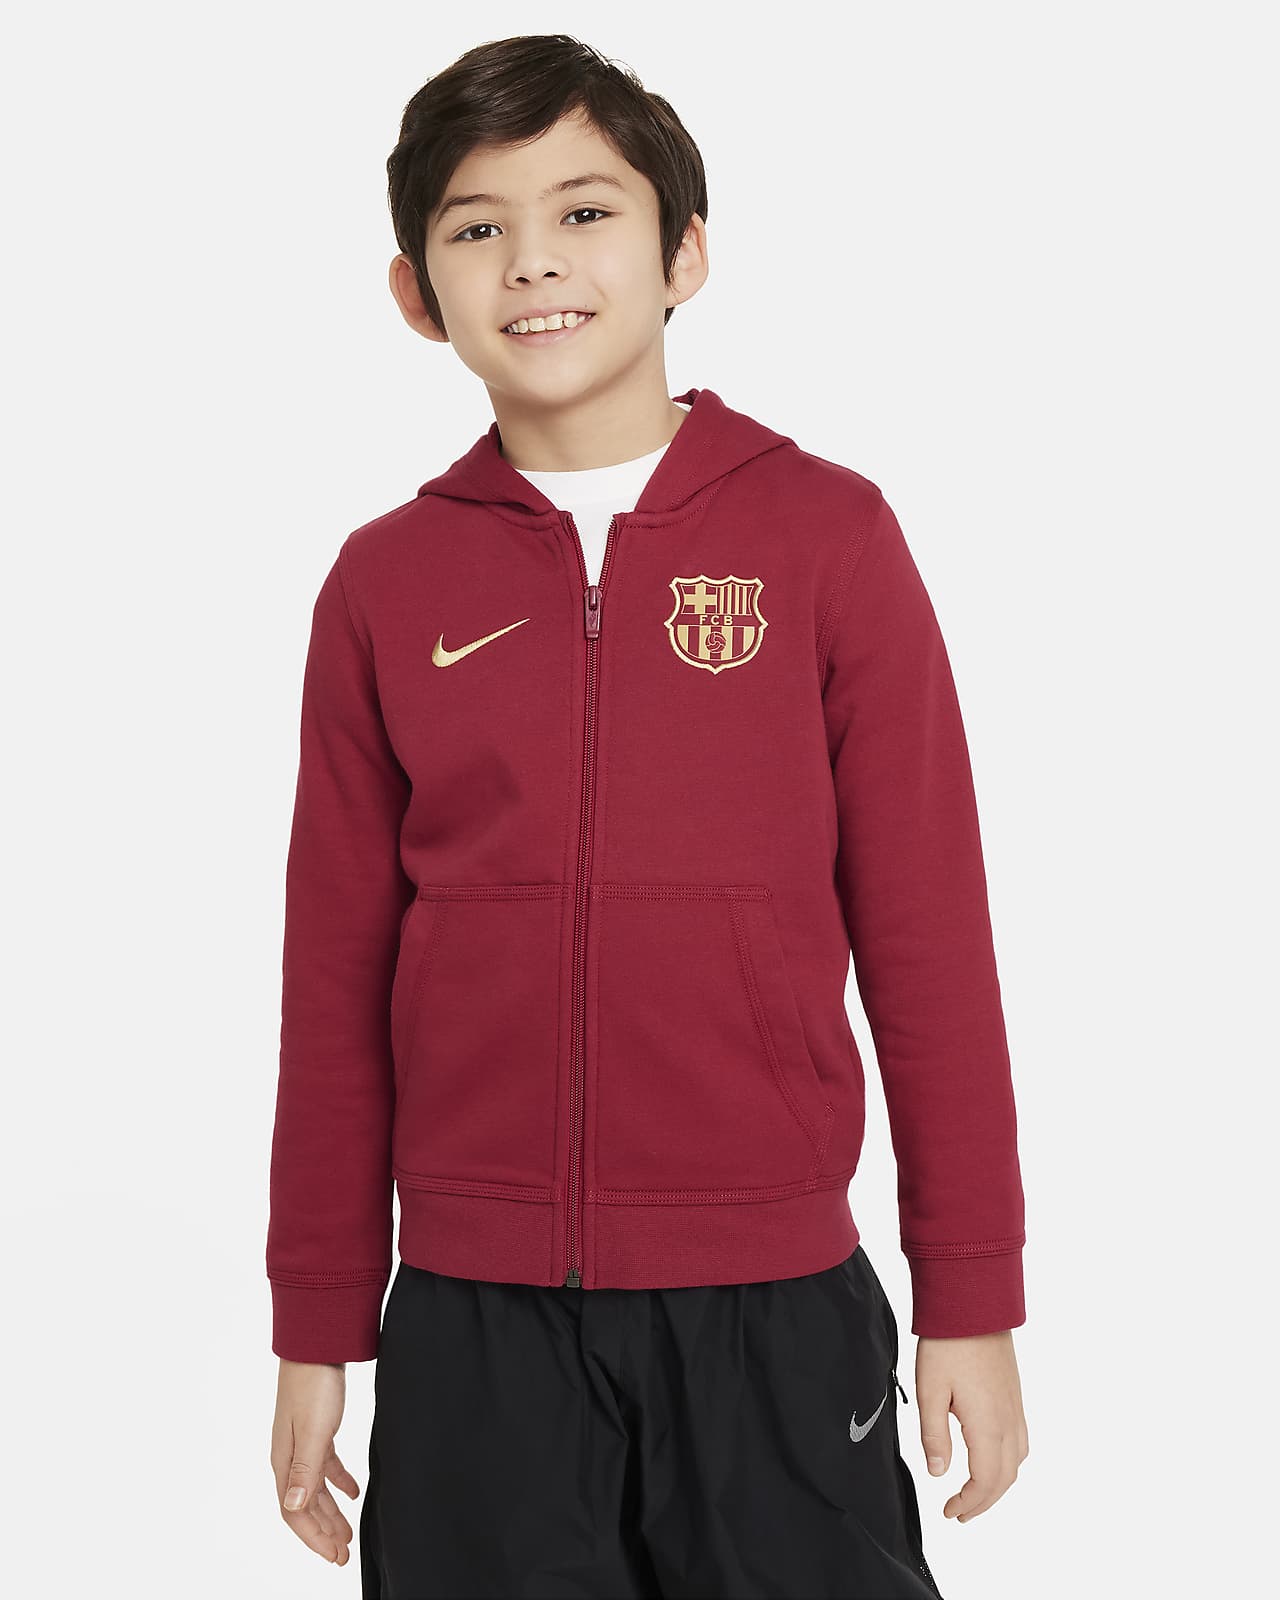 Ποδοσφαιρική μπλούζα με κουκούλα και φερμουάρ σε όλο το μήκος Nike Μπαρτσελόνα Club για μεγάλα αγόρια